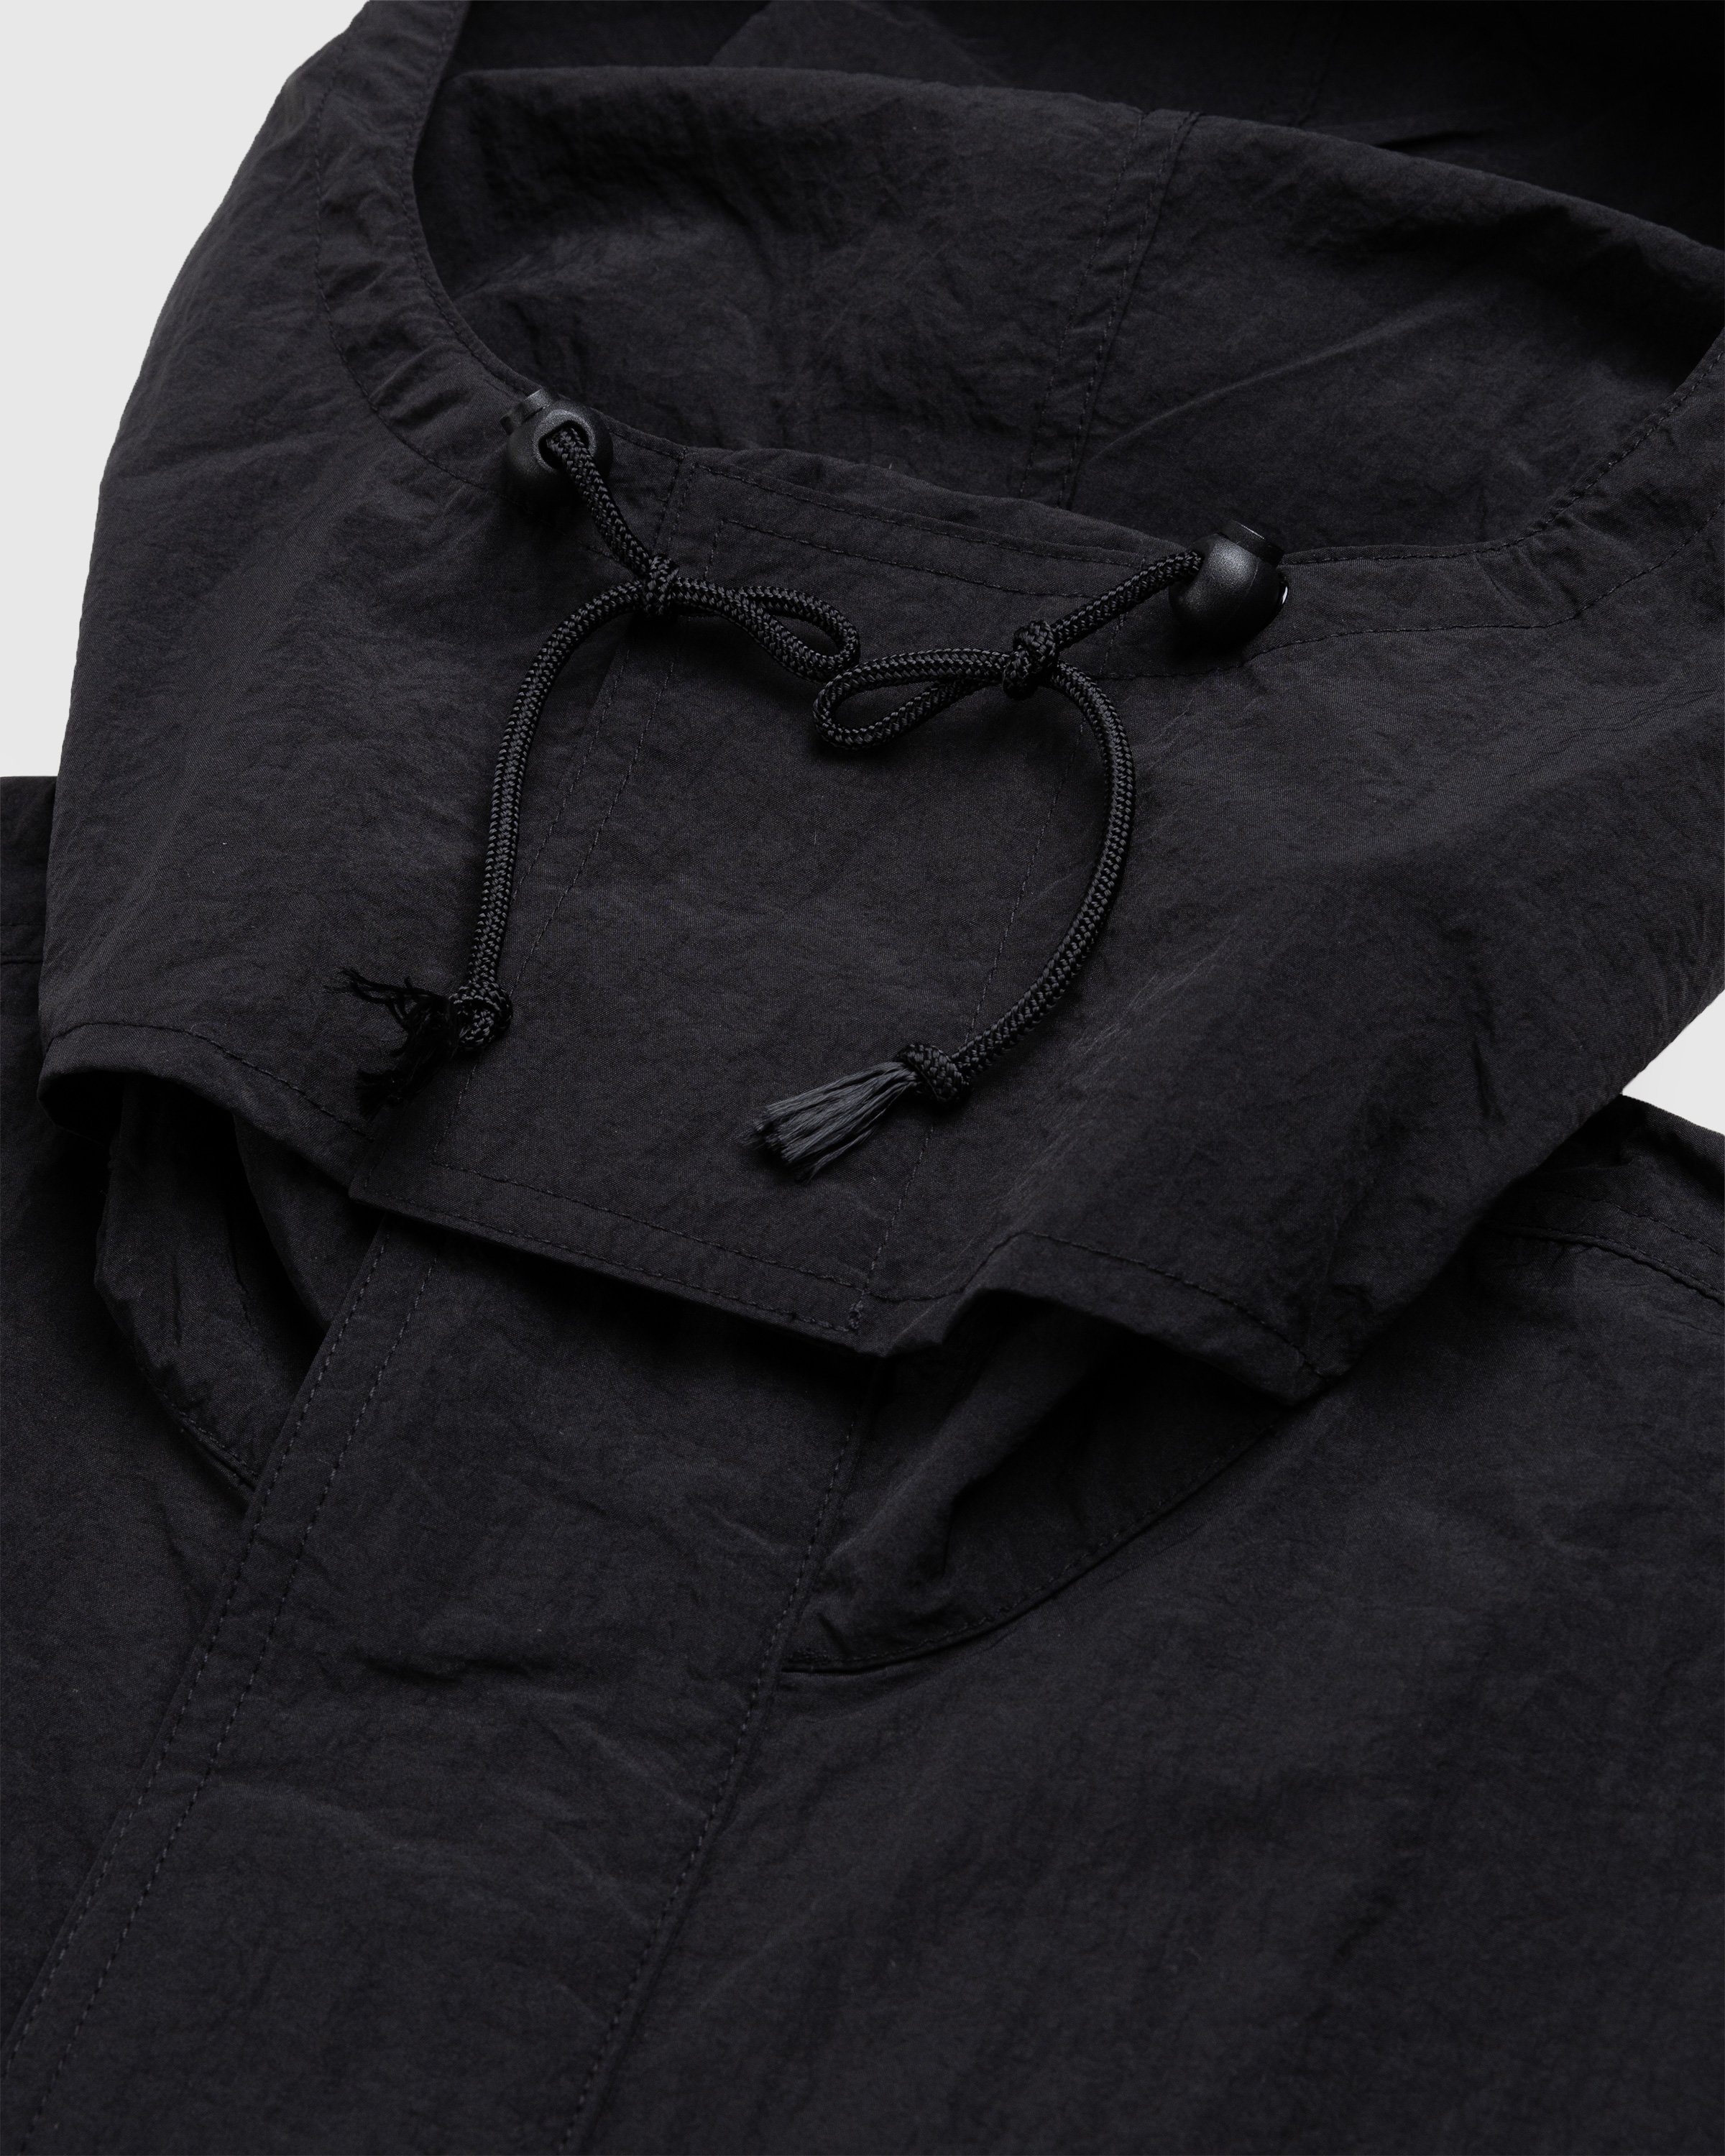 Acne Studios - Nylon Hooded Jacket Black - Clothing - Black - Image 5